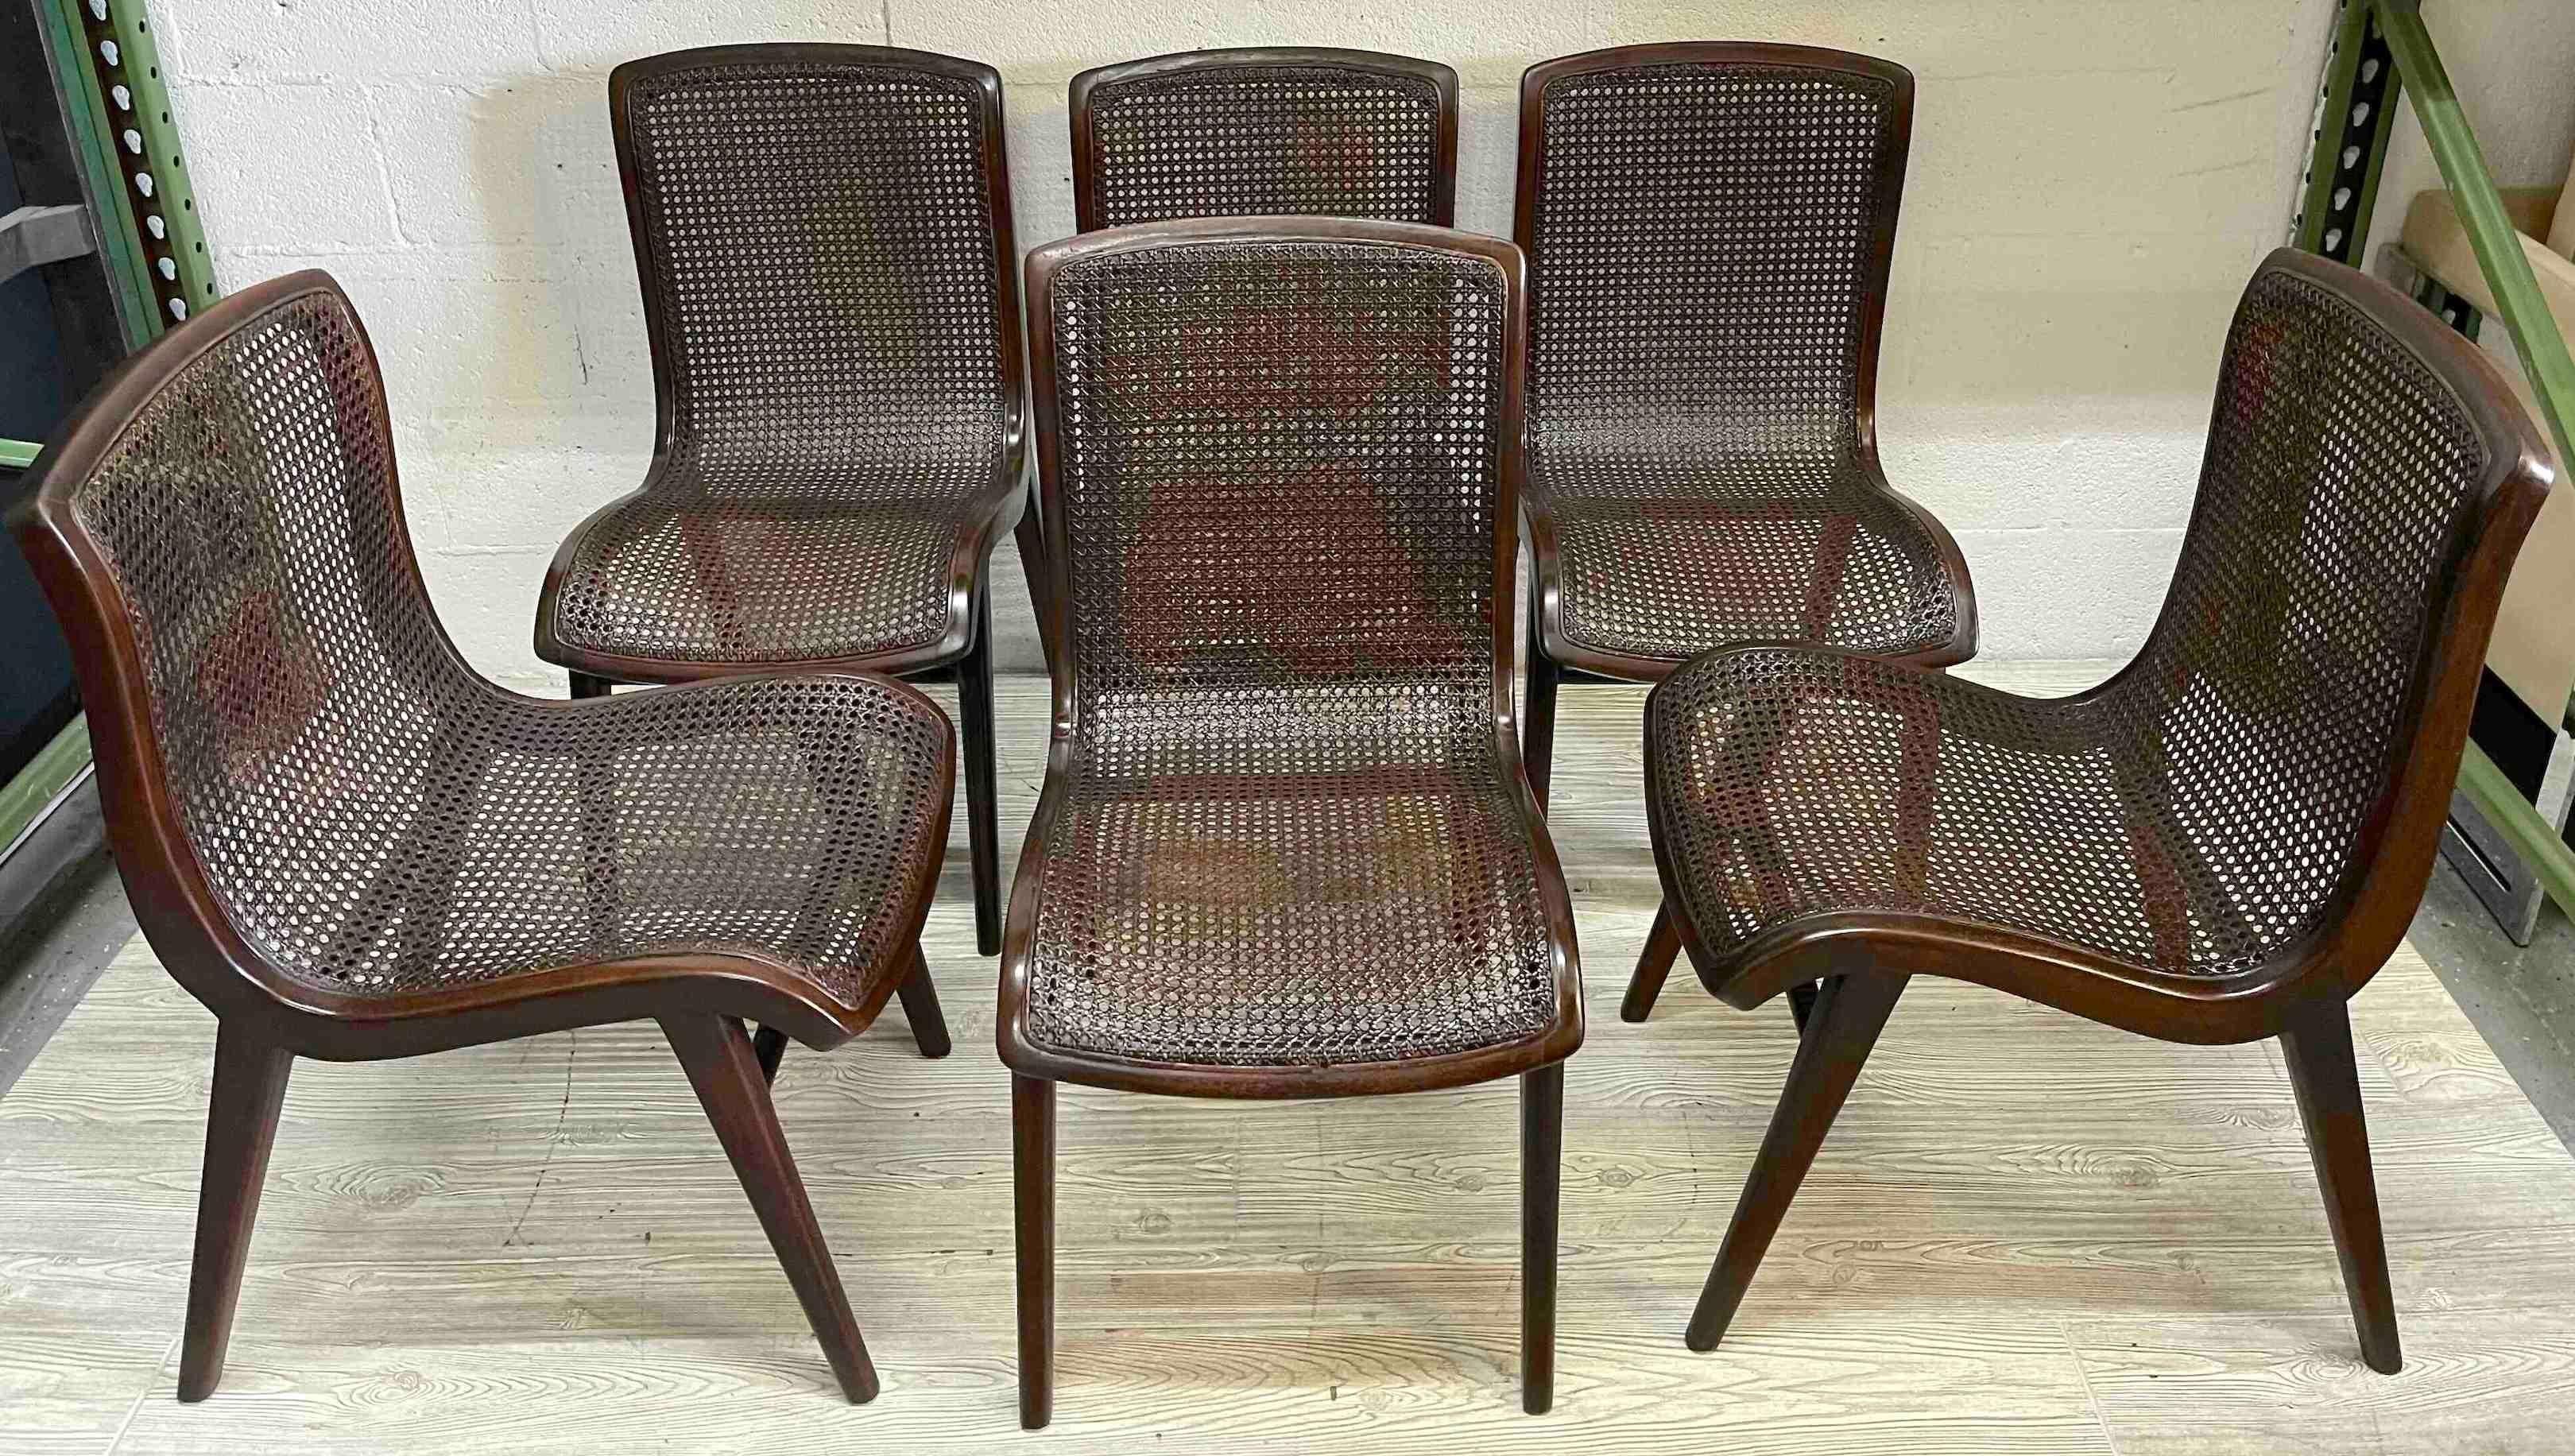 Six chaises de salle à manger en canne tressée modernes et élégantes
France, vers 1950 

Un ensemble de six élégantes chaises de salle à manger modernes françaises en canne tressée en porte-à-faux exsude la sophistication et le style intemporel.